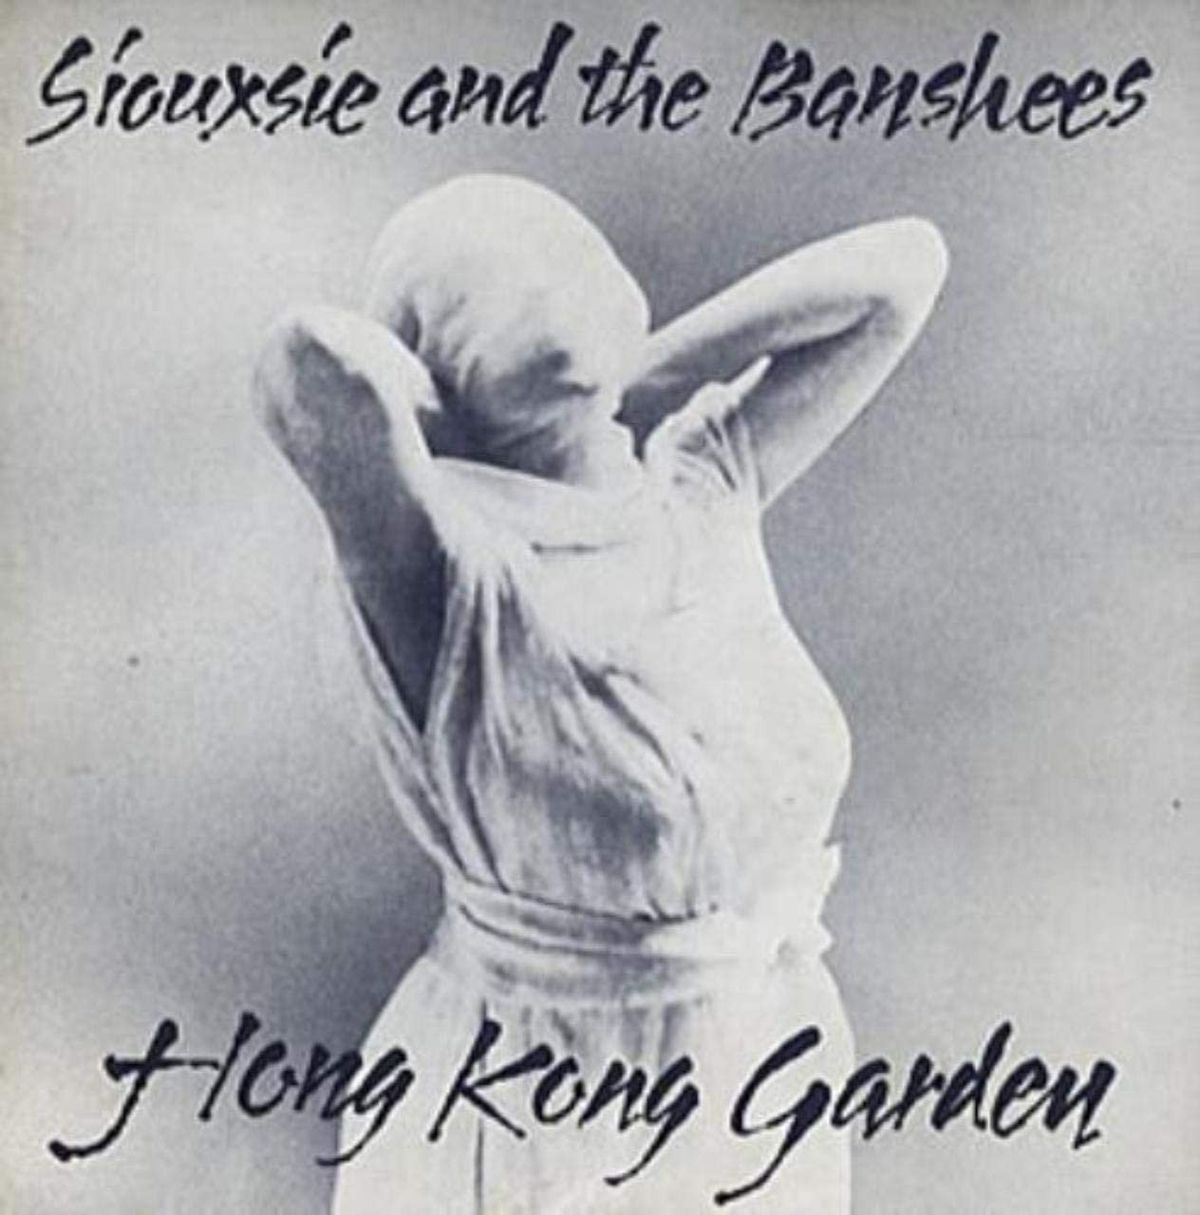 #StraffeMadammen - Siouxsie & the Banshees - Hong Kong Garden (1978)